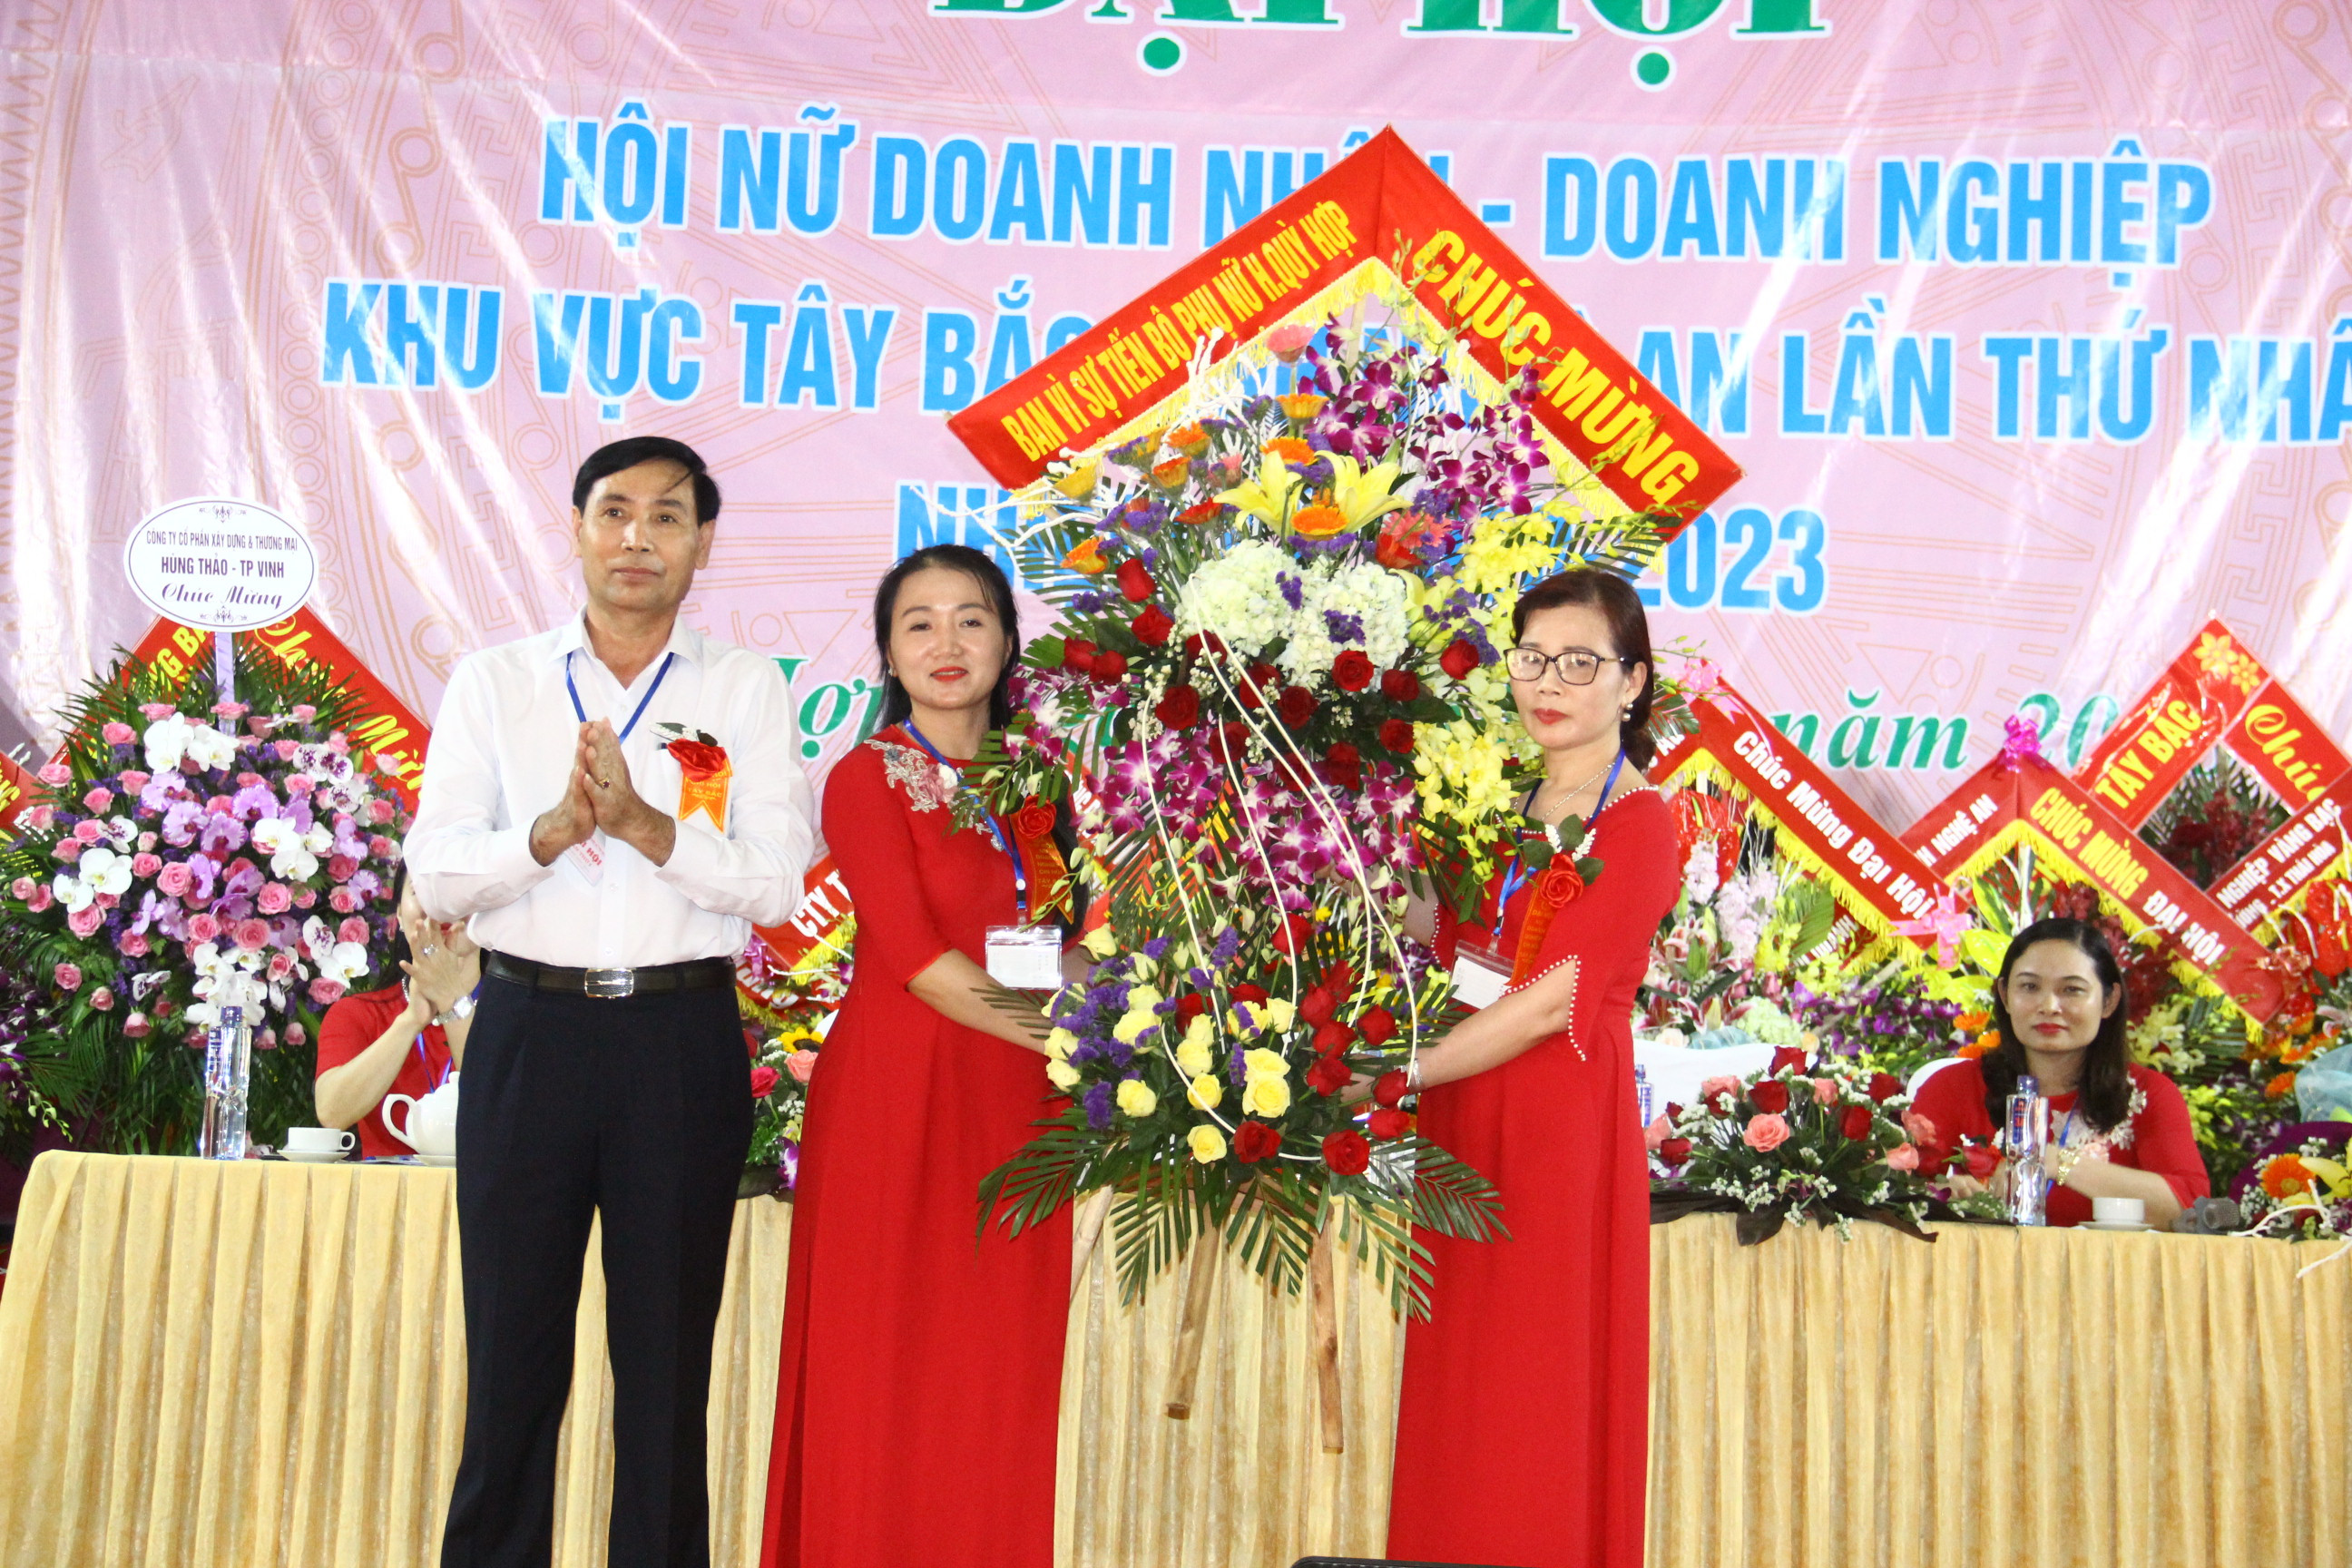 Lãnh đạo huyện Quỳ Hợp tặng hoa chúc mừng Chi hội nữ doanh nhân - doanh nghiệp khu vực Tây Bắc. Ảnh Hoàng Vĩnh.